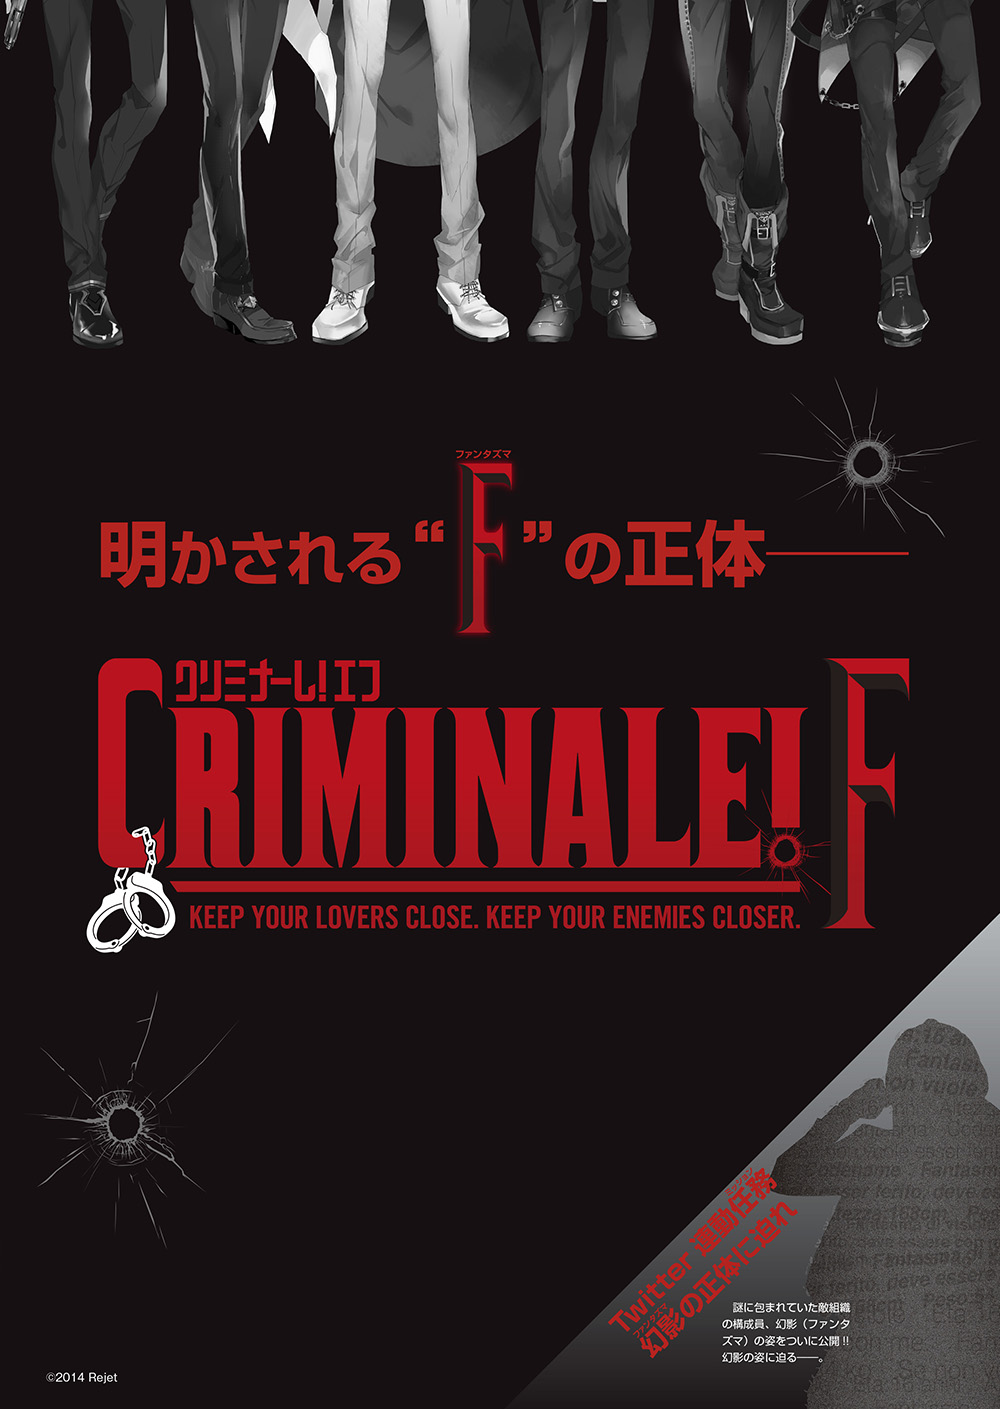 http://rejetweb.jp/criminale/blog/criminale_F_omote1002.jpg